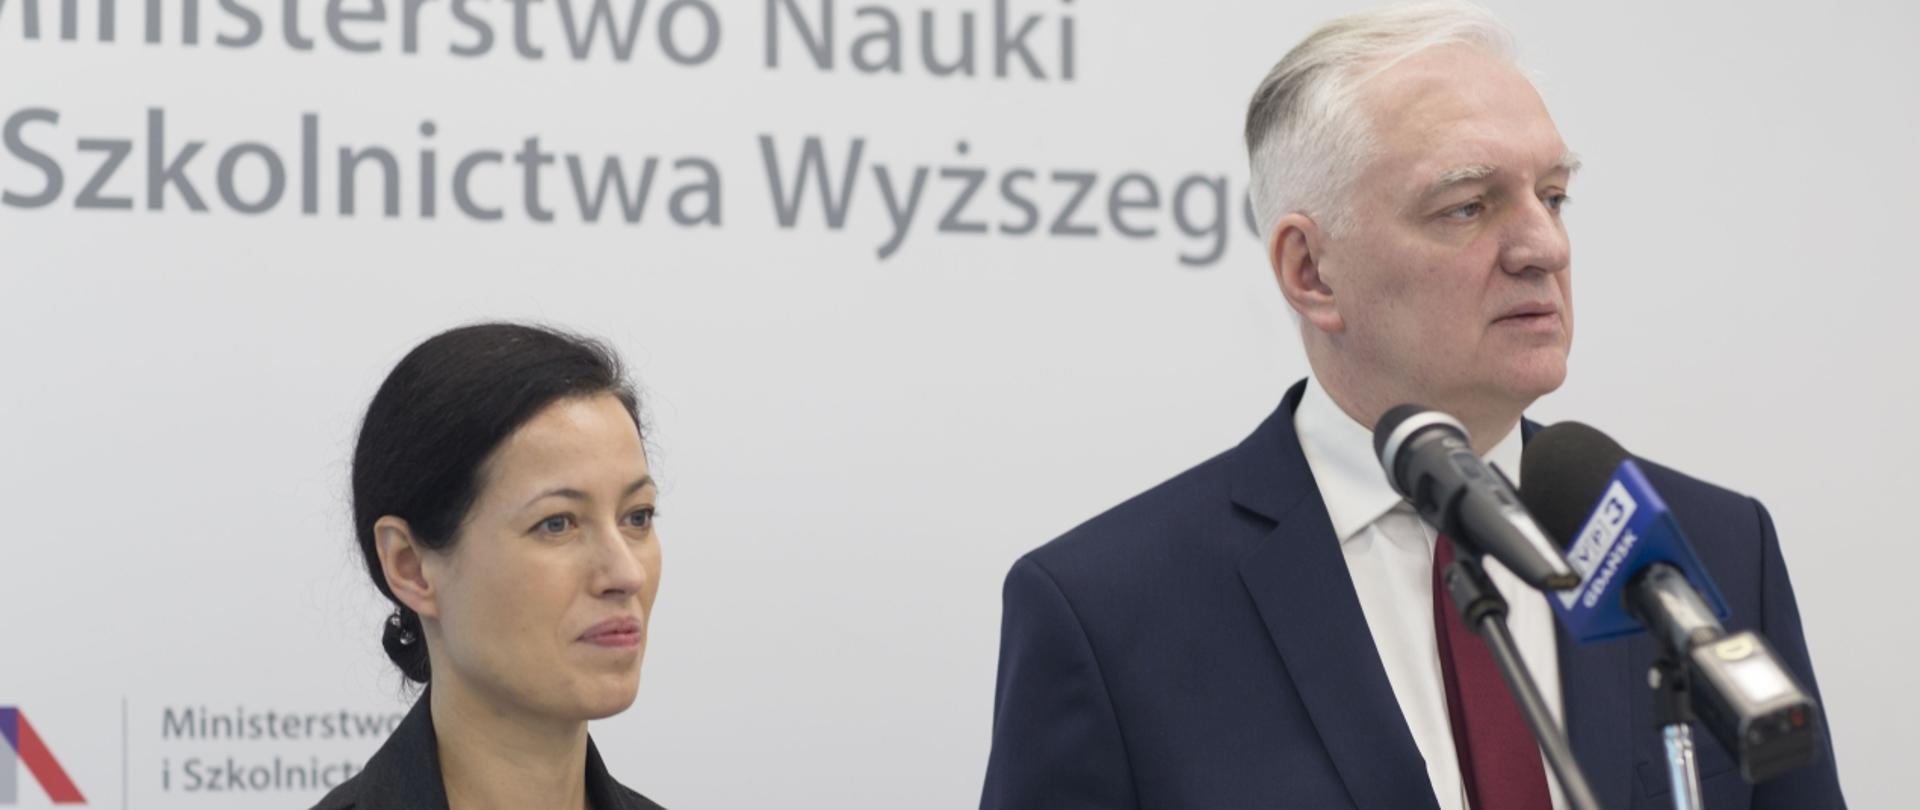 Ministrowie Jarosław Gowin i Anna Budzanowska stoją na tle białej ściany